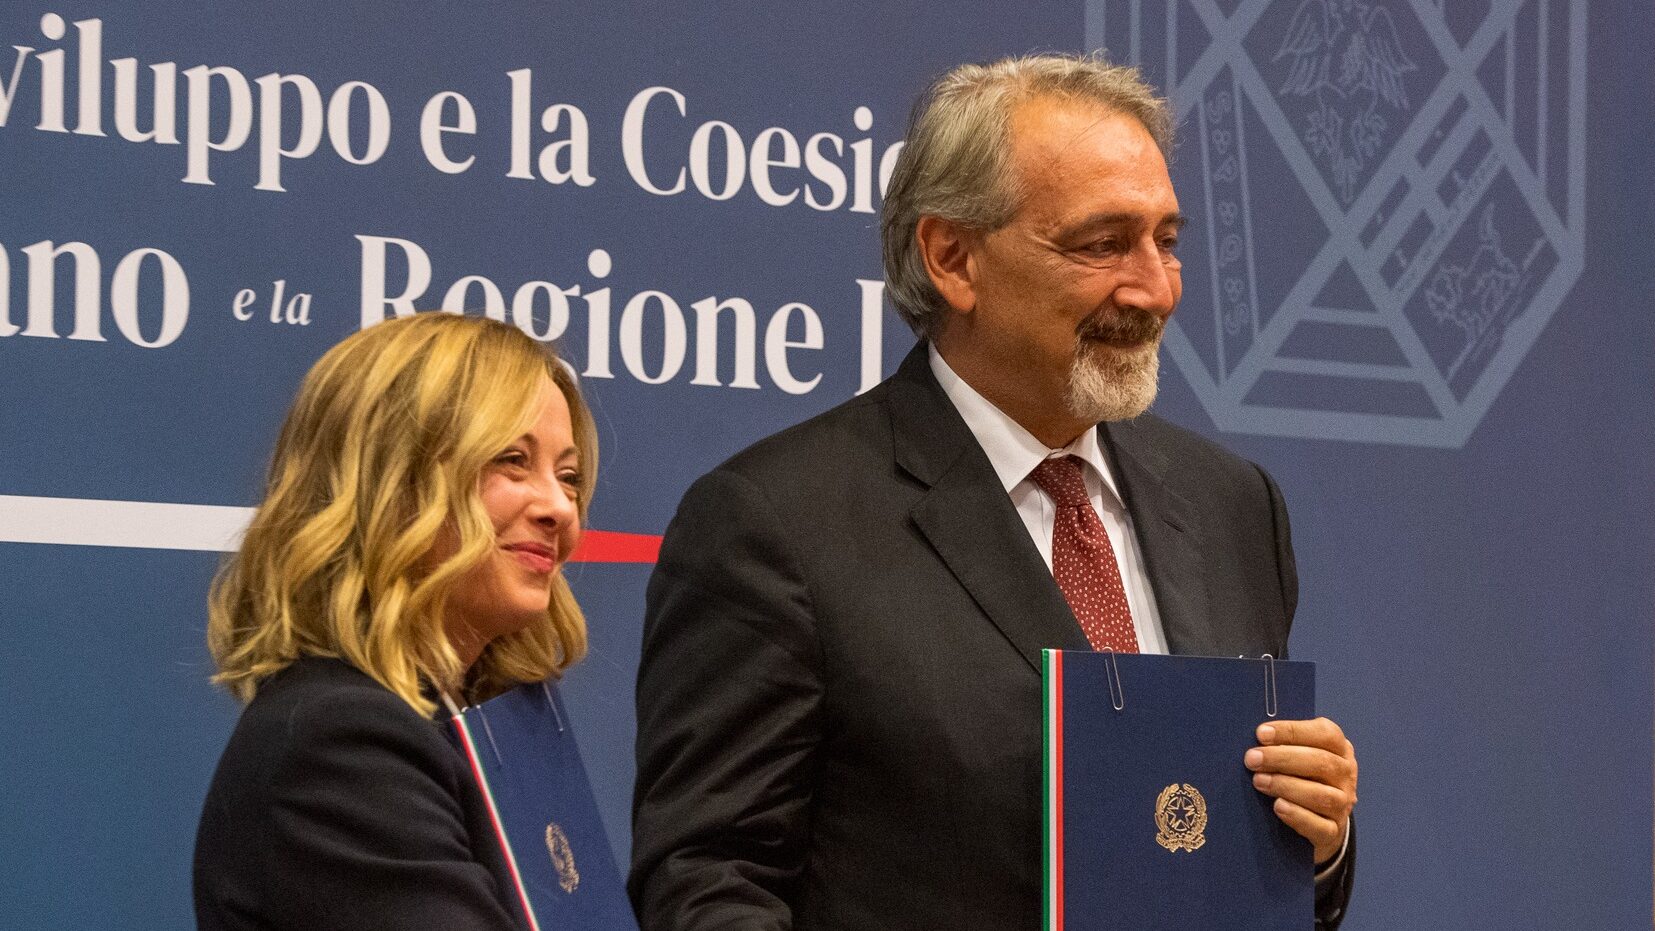 Accordo di Coesione Governo-Regione Lazio, le parole di Rocca